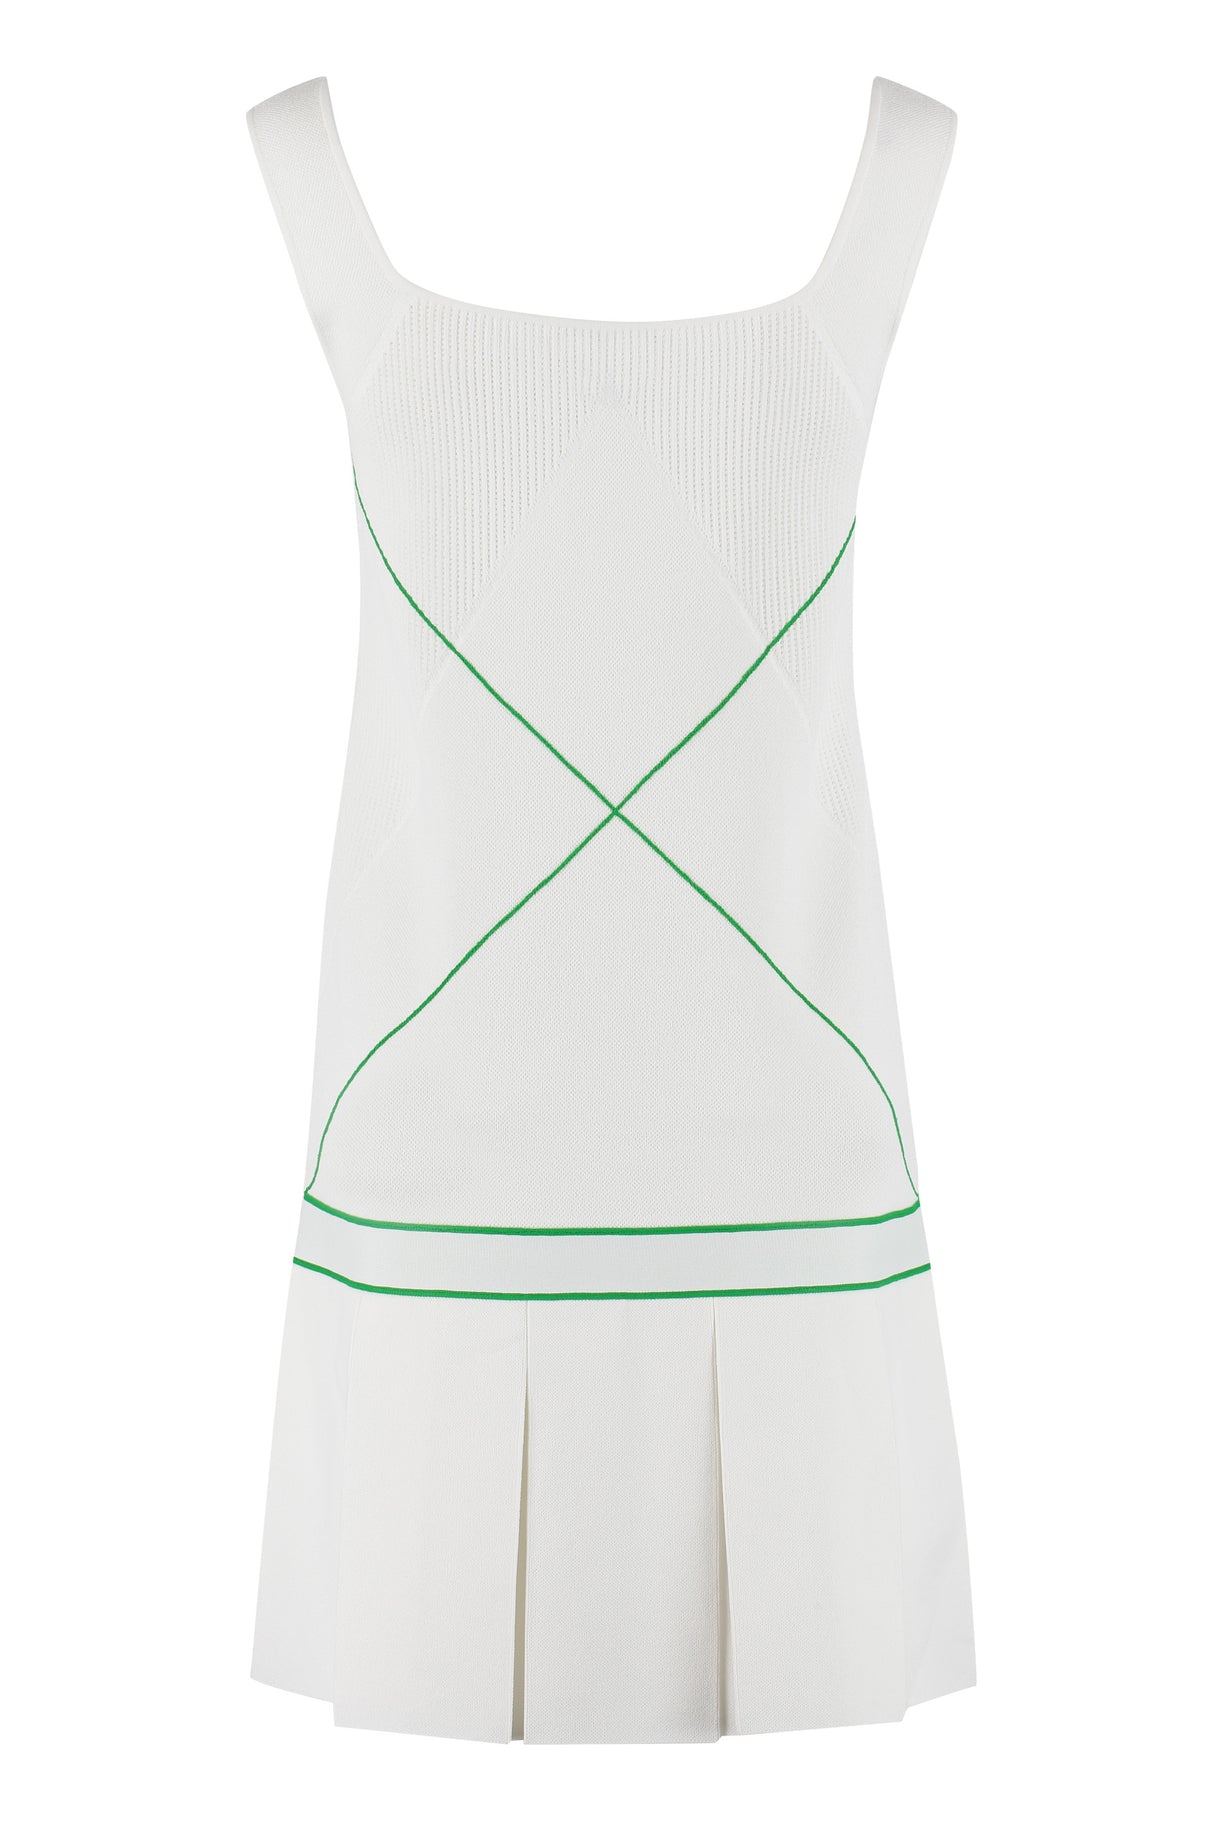 Salon 03コレクションからのホワイトニットドレス-SS22